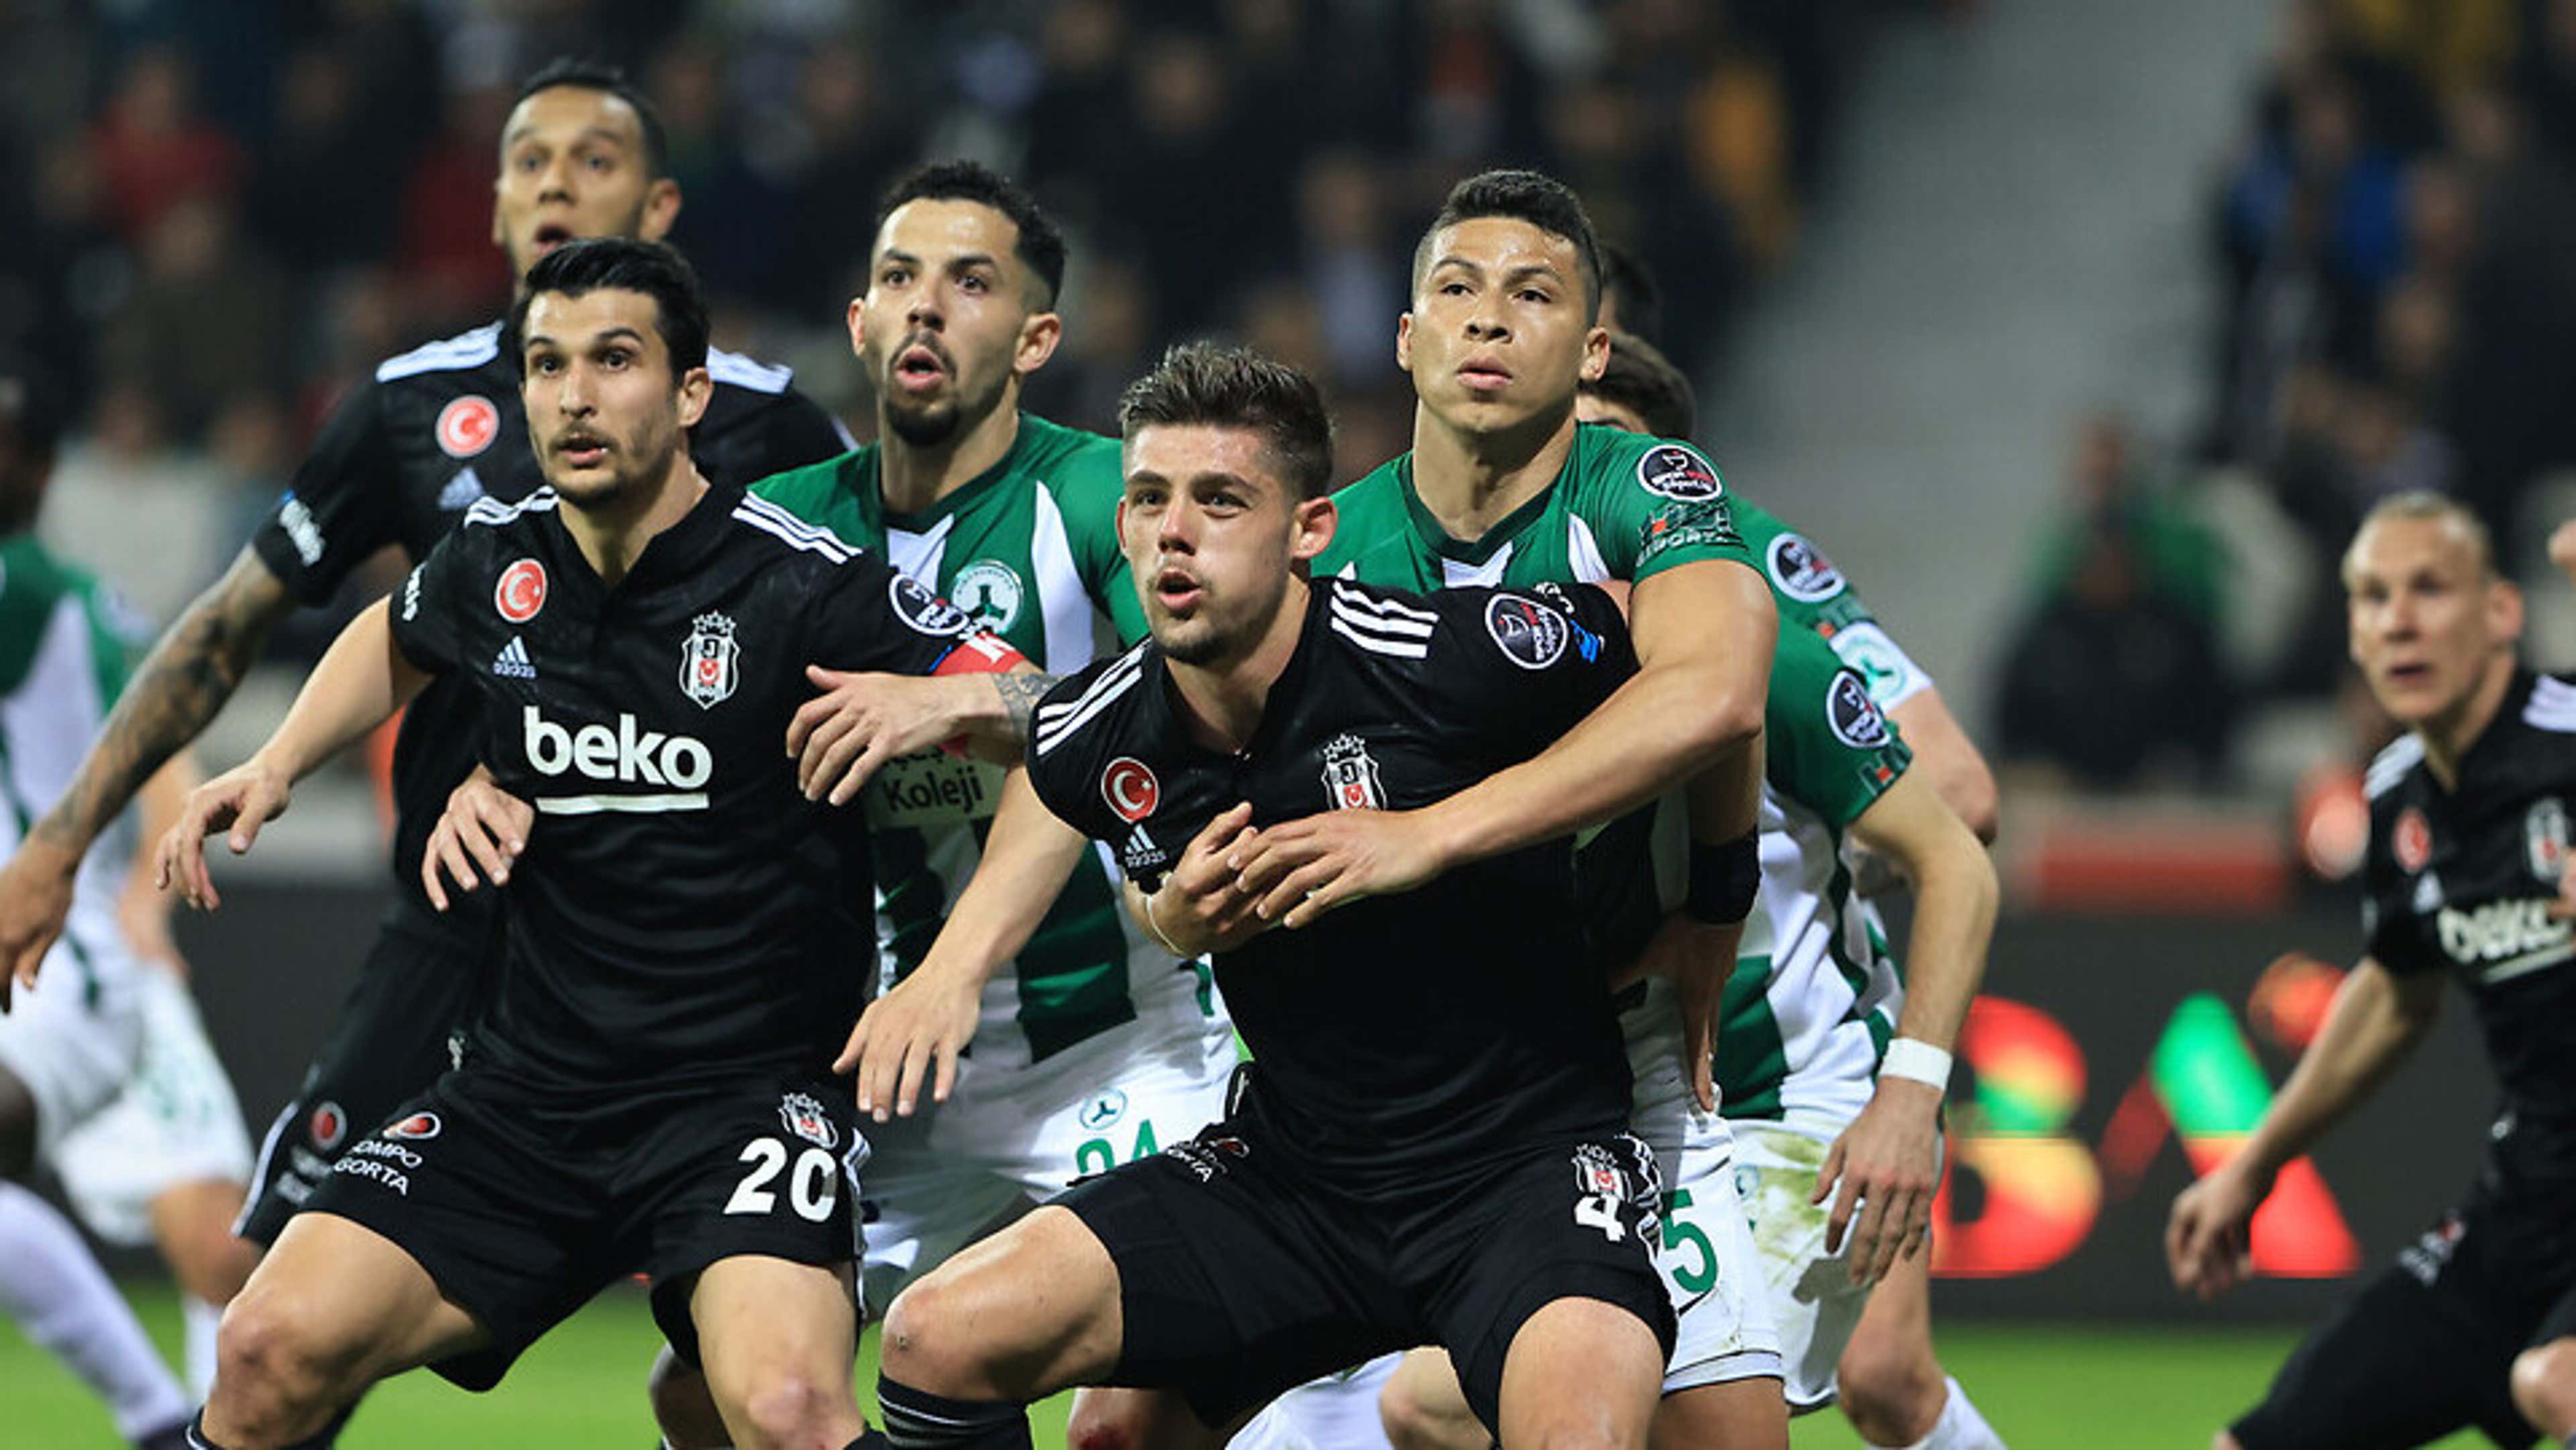 Beşiktaş iki takımla hazırlık maçı yapacak - Son Dakika Haberleri